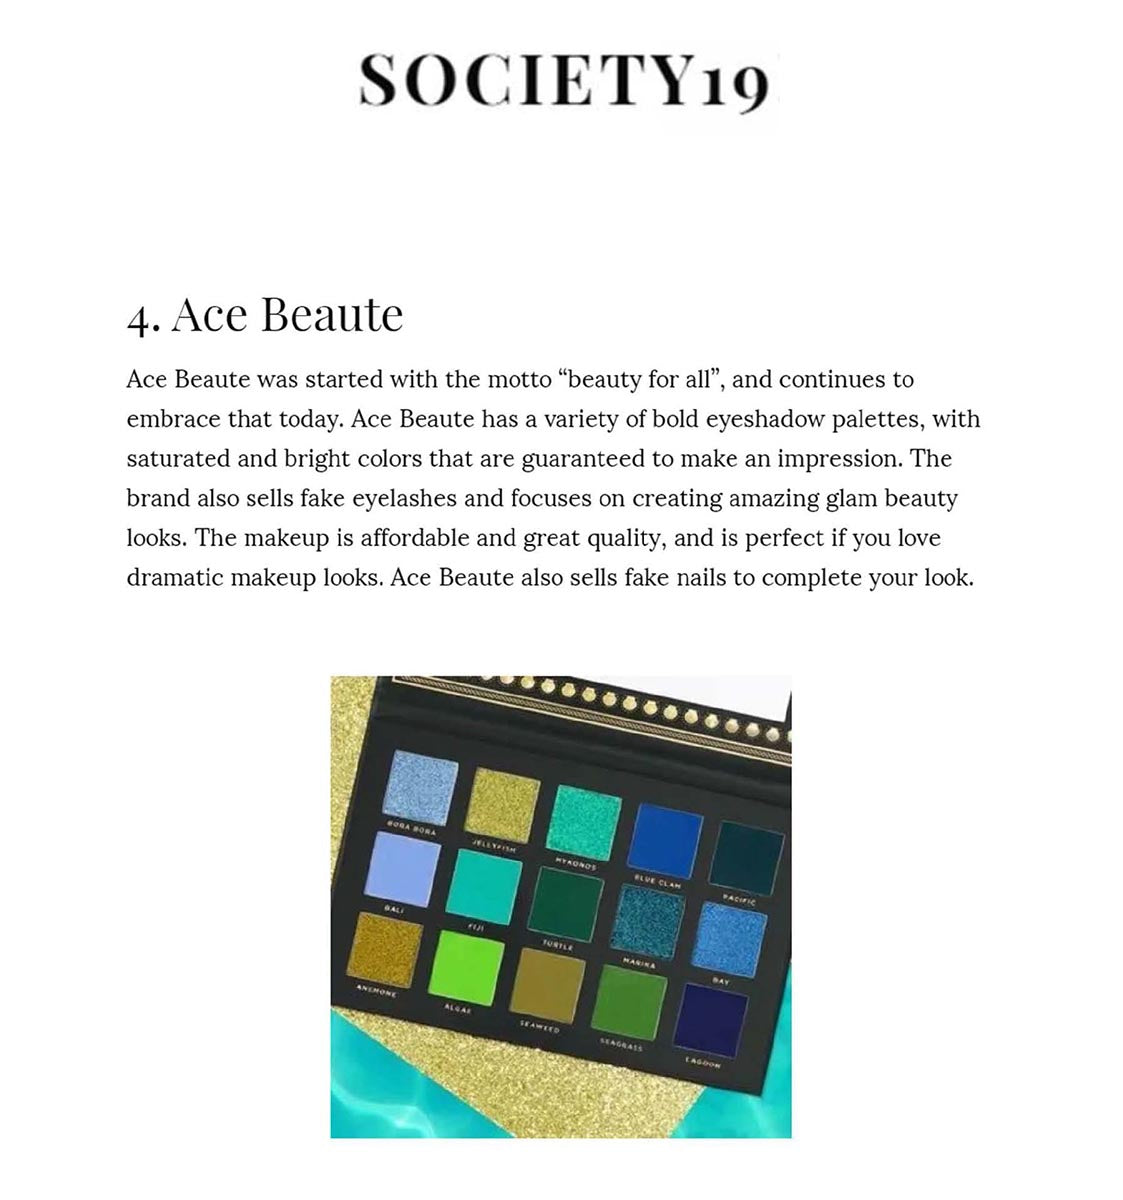 Society19 Ace Beauté